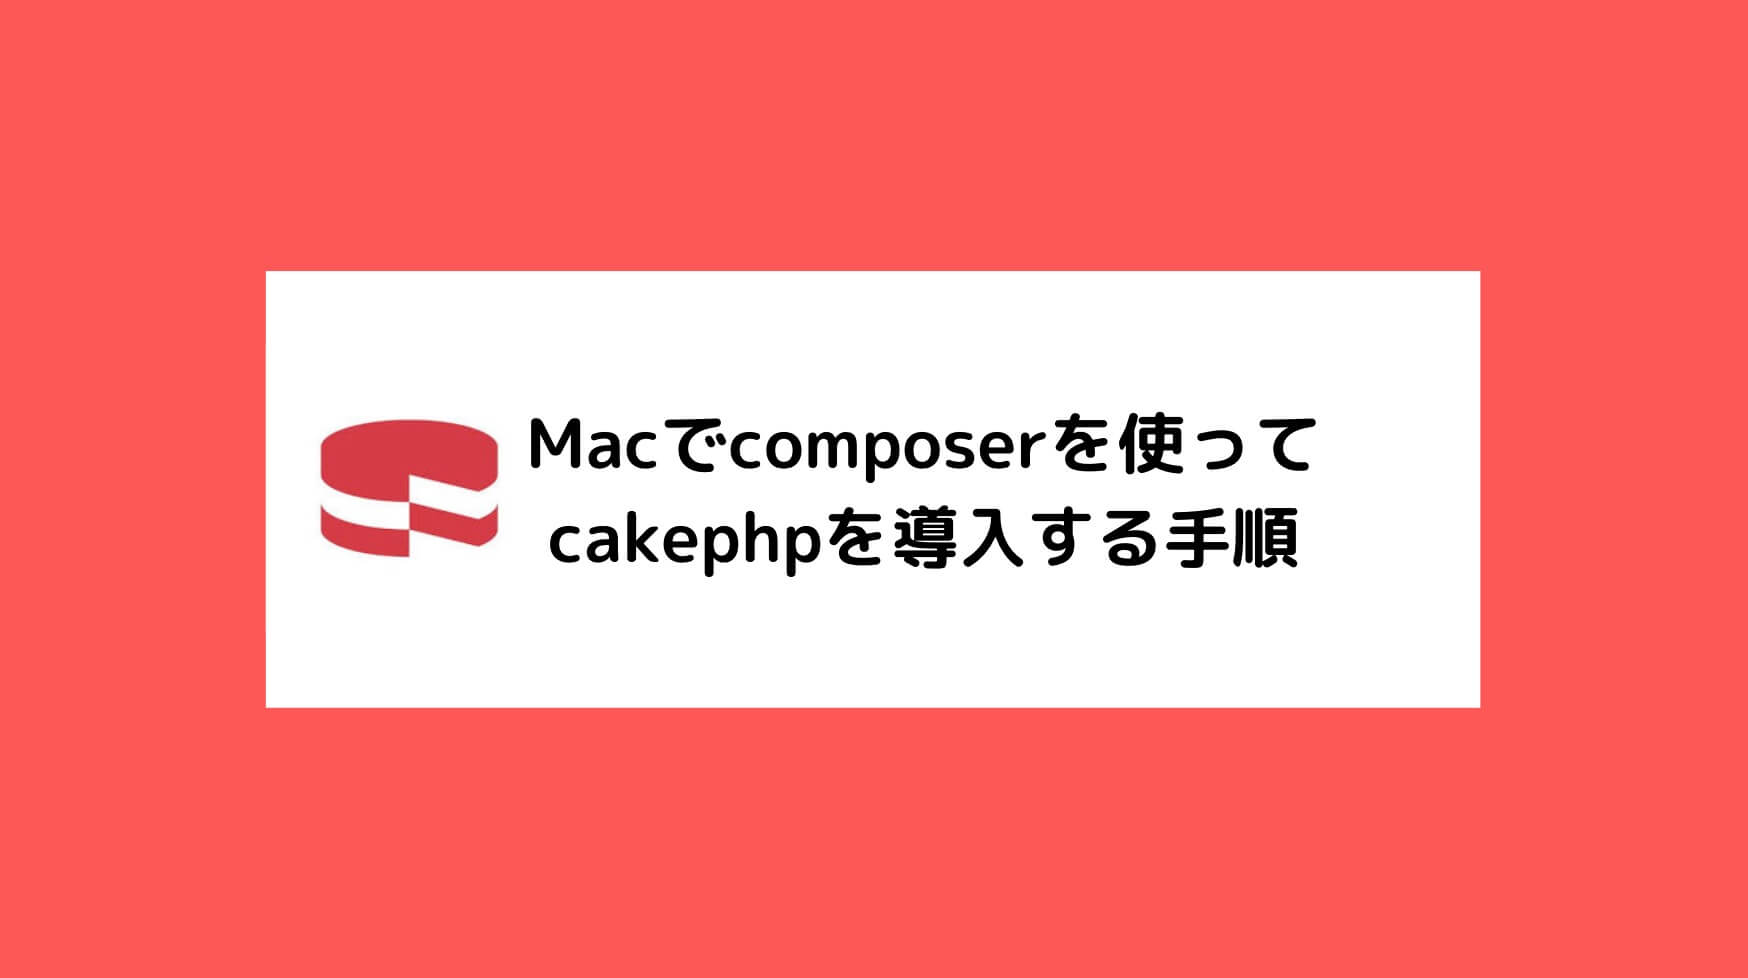 Macでcomposerを使ってcakephpを導入する手順と書かれた画像